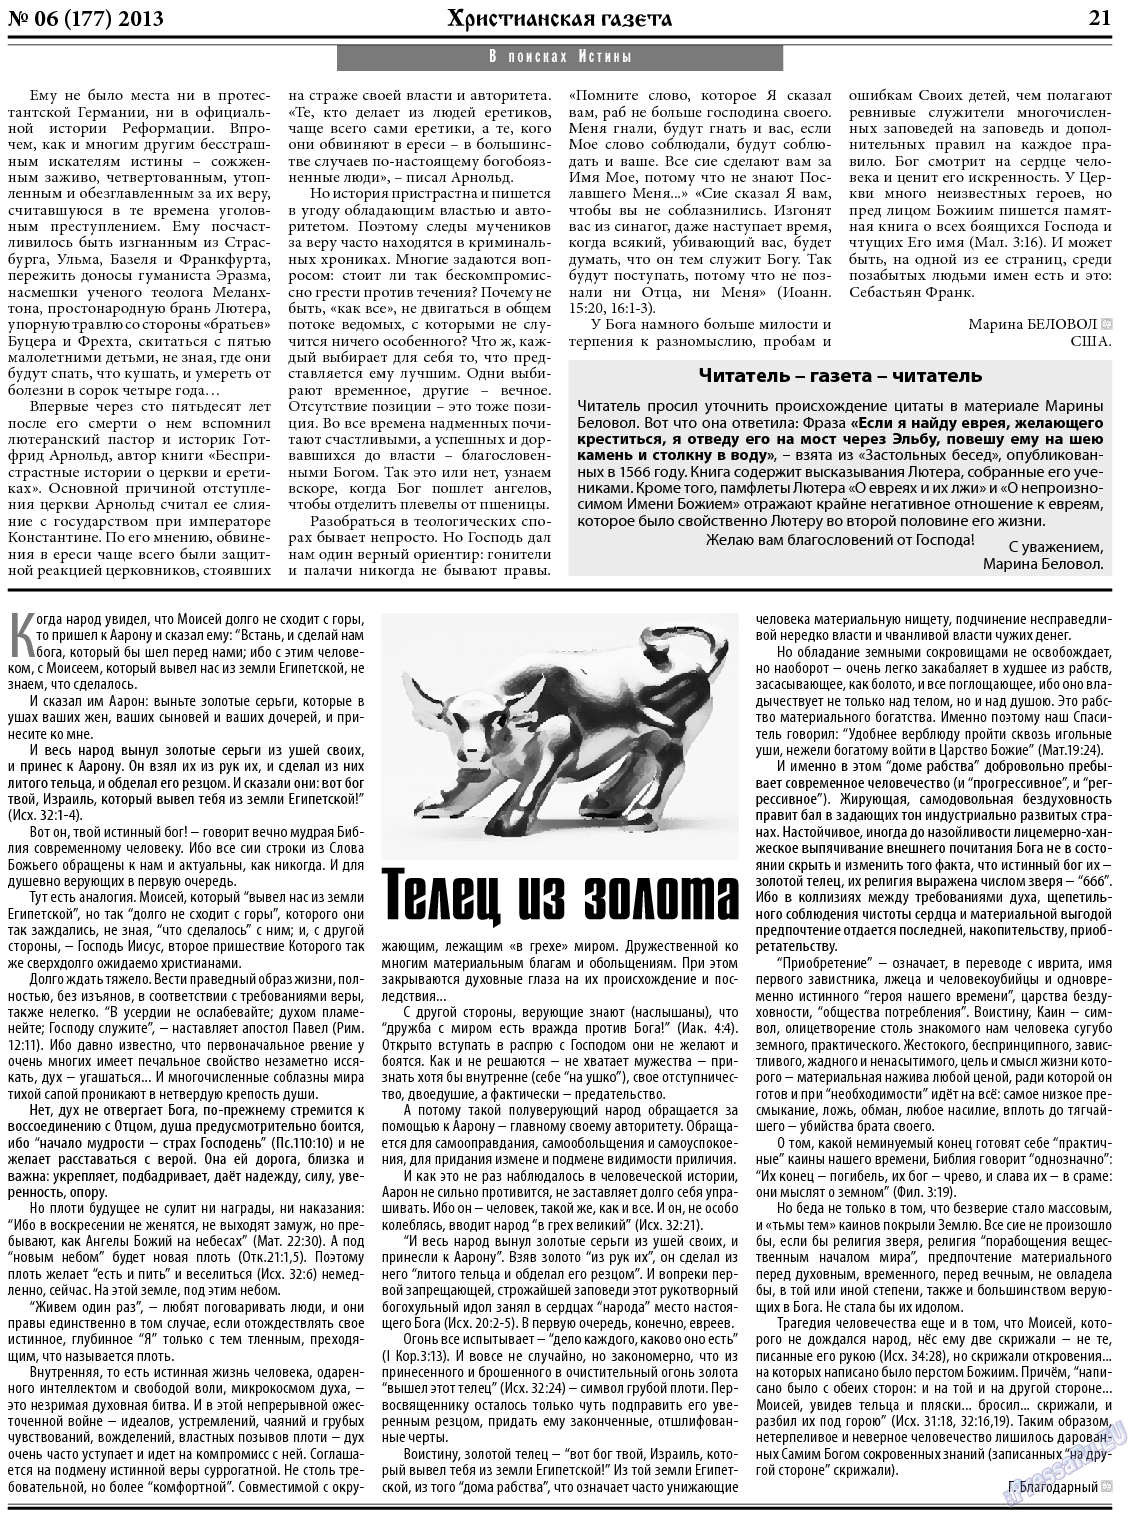 Христианская газета, газета. 2013 №6 стр.29